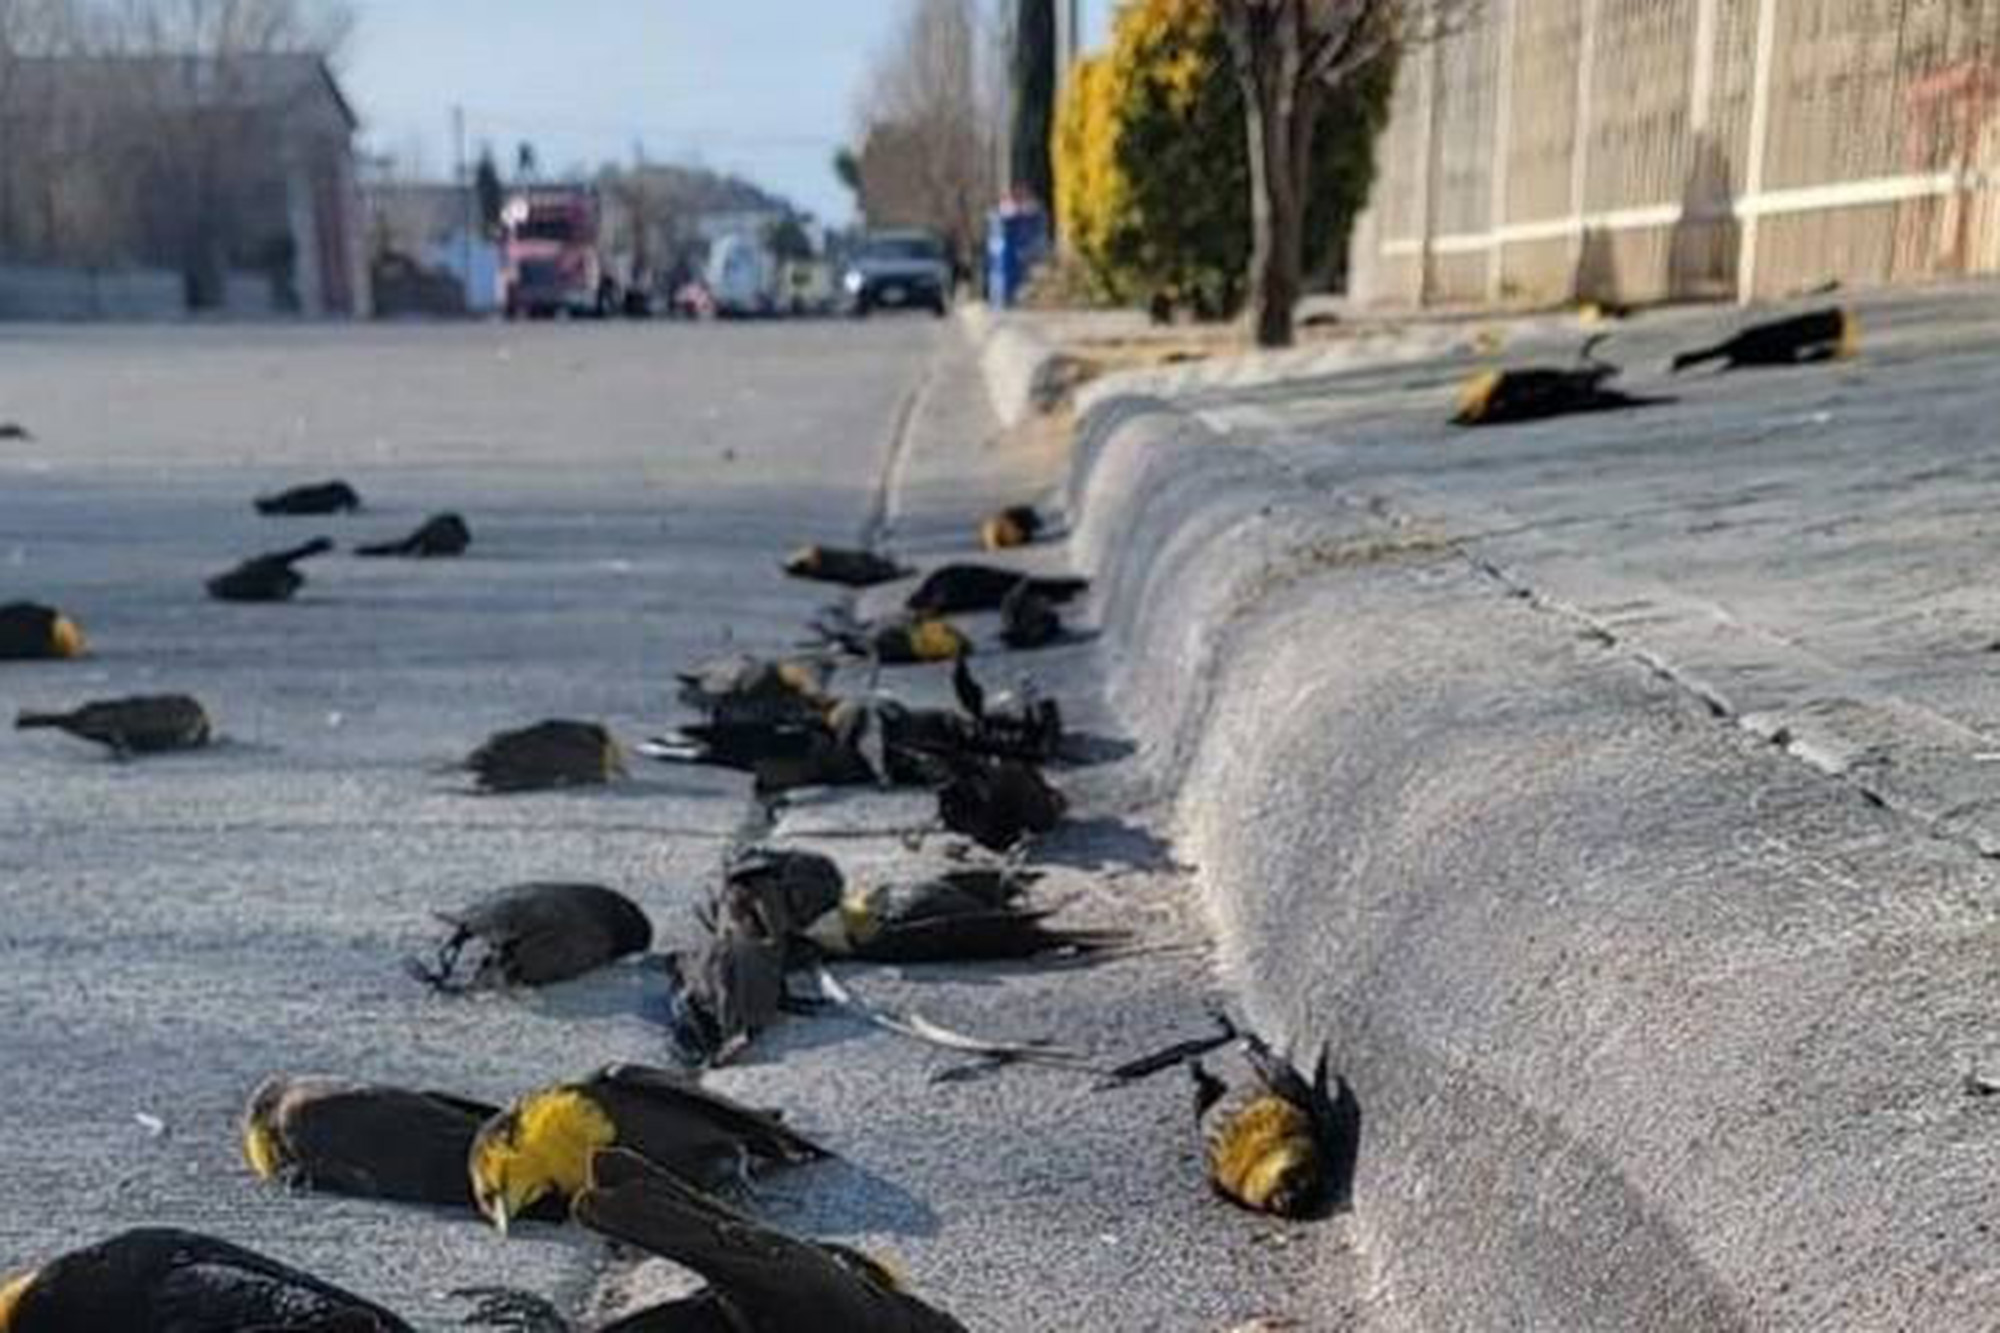 Clip: Khoảnh khắc hàng ngàn con chim đang bay bất ngờ rơi cùng lúc xuống đường rồi chết đầy bí ẩn - Ảnh 3.